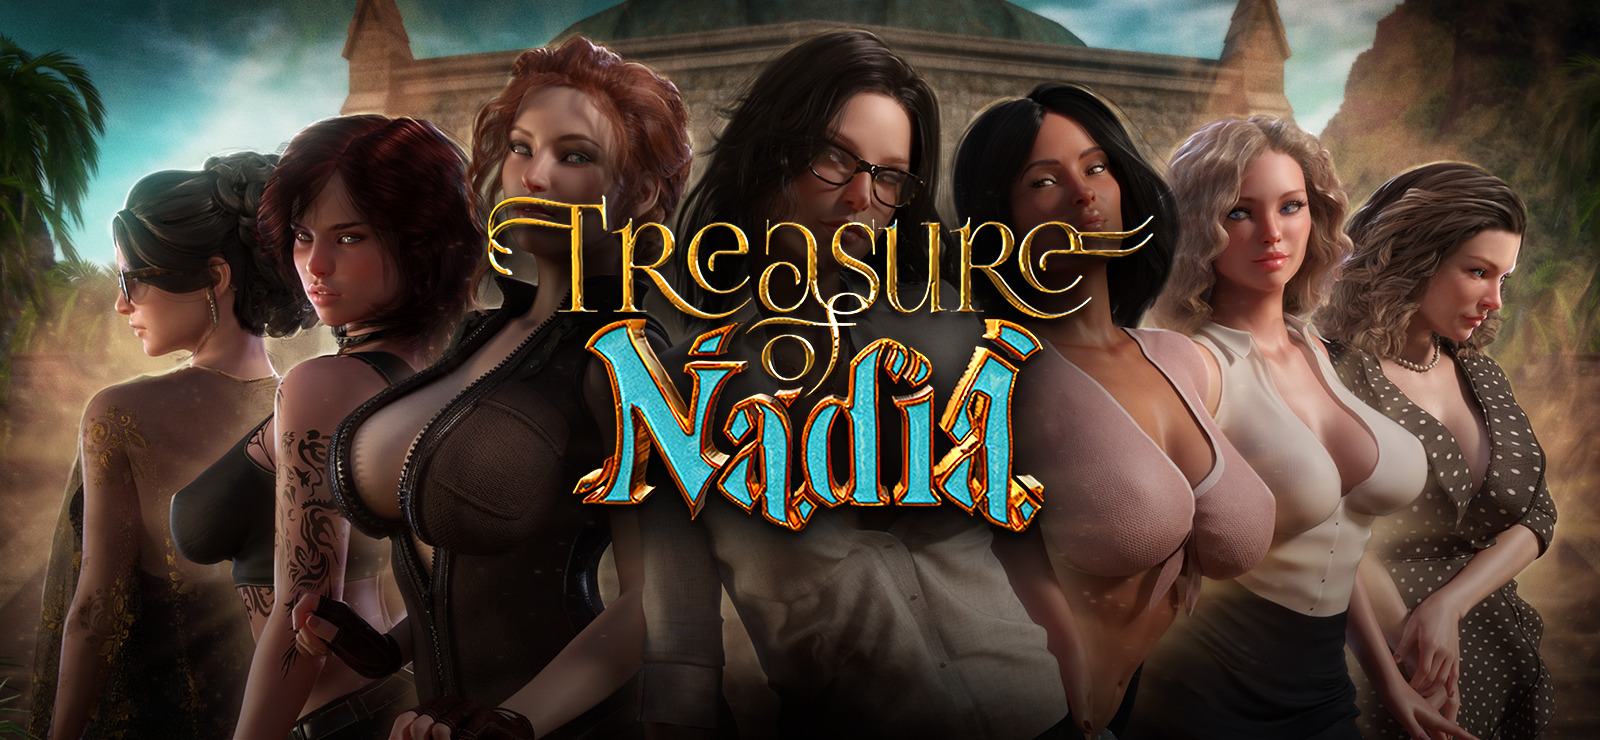 Treasure of nadia steam